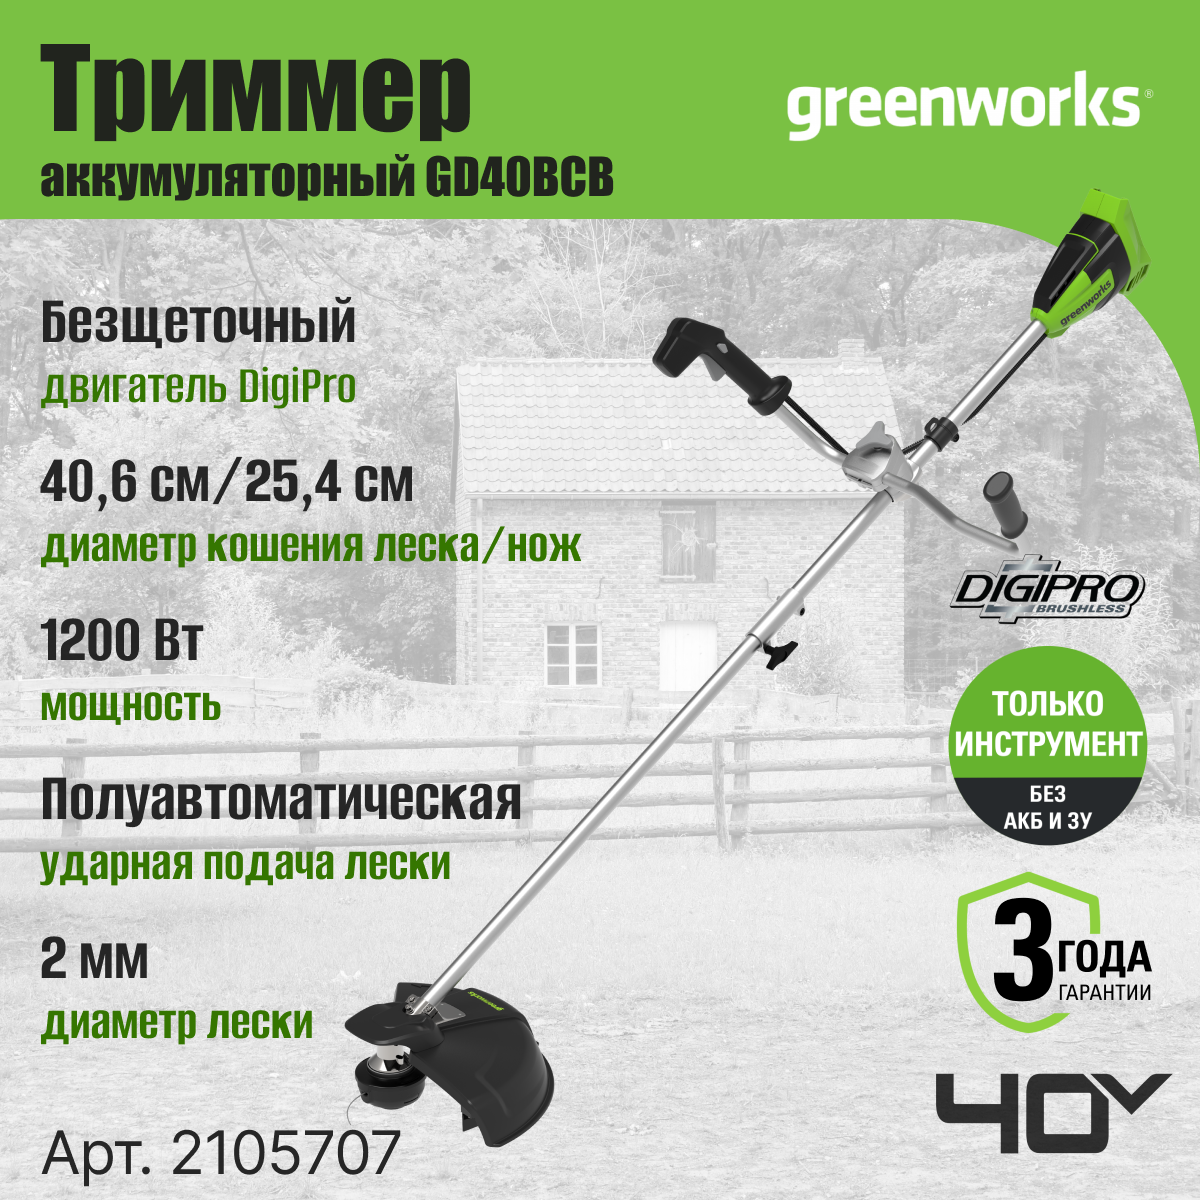 Триммер аккумуляторный Greenworks Арт. 2105707, 40V, 40 см, бесщеточный, без АКБ и ЗУ